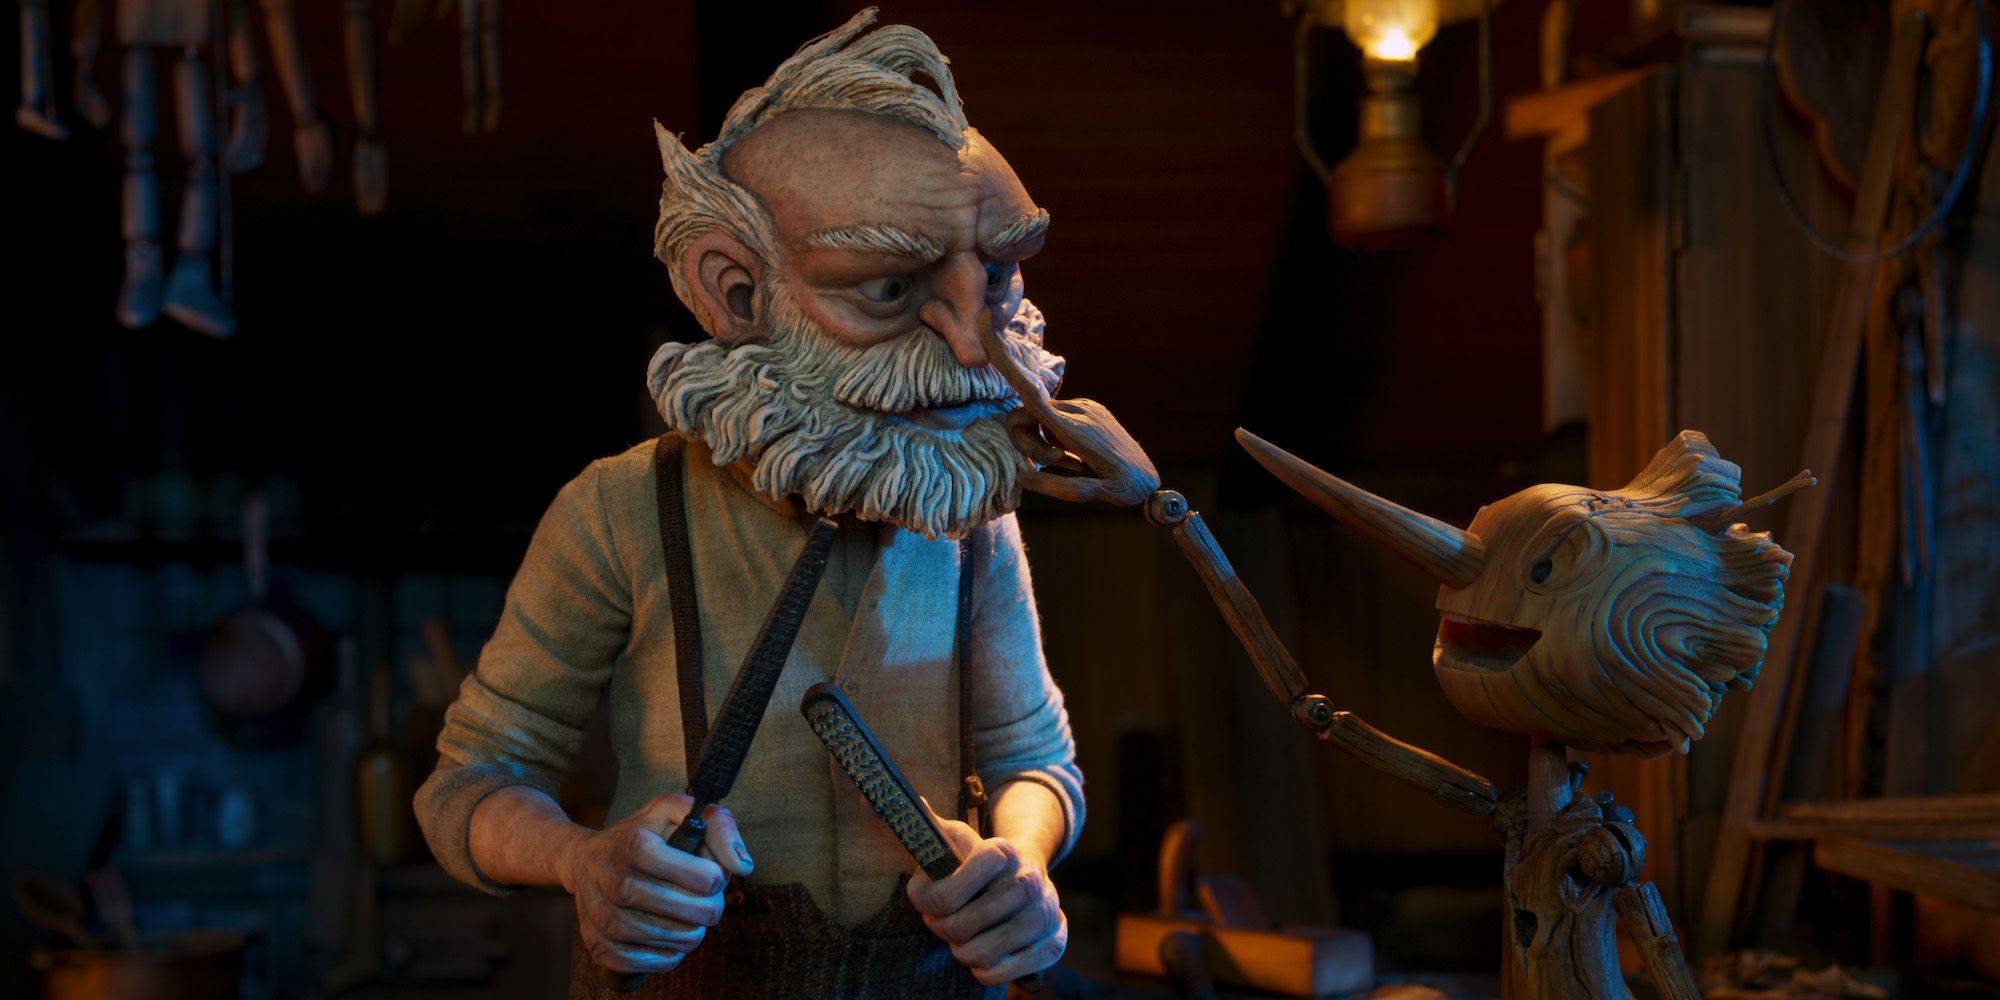 Pinocchio pokes Geppetto on the nose in Guillermo del Toro's Pinocchio.